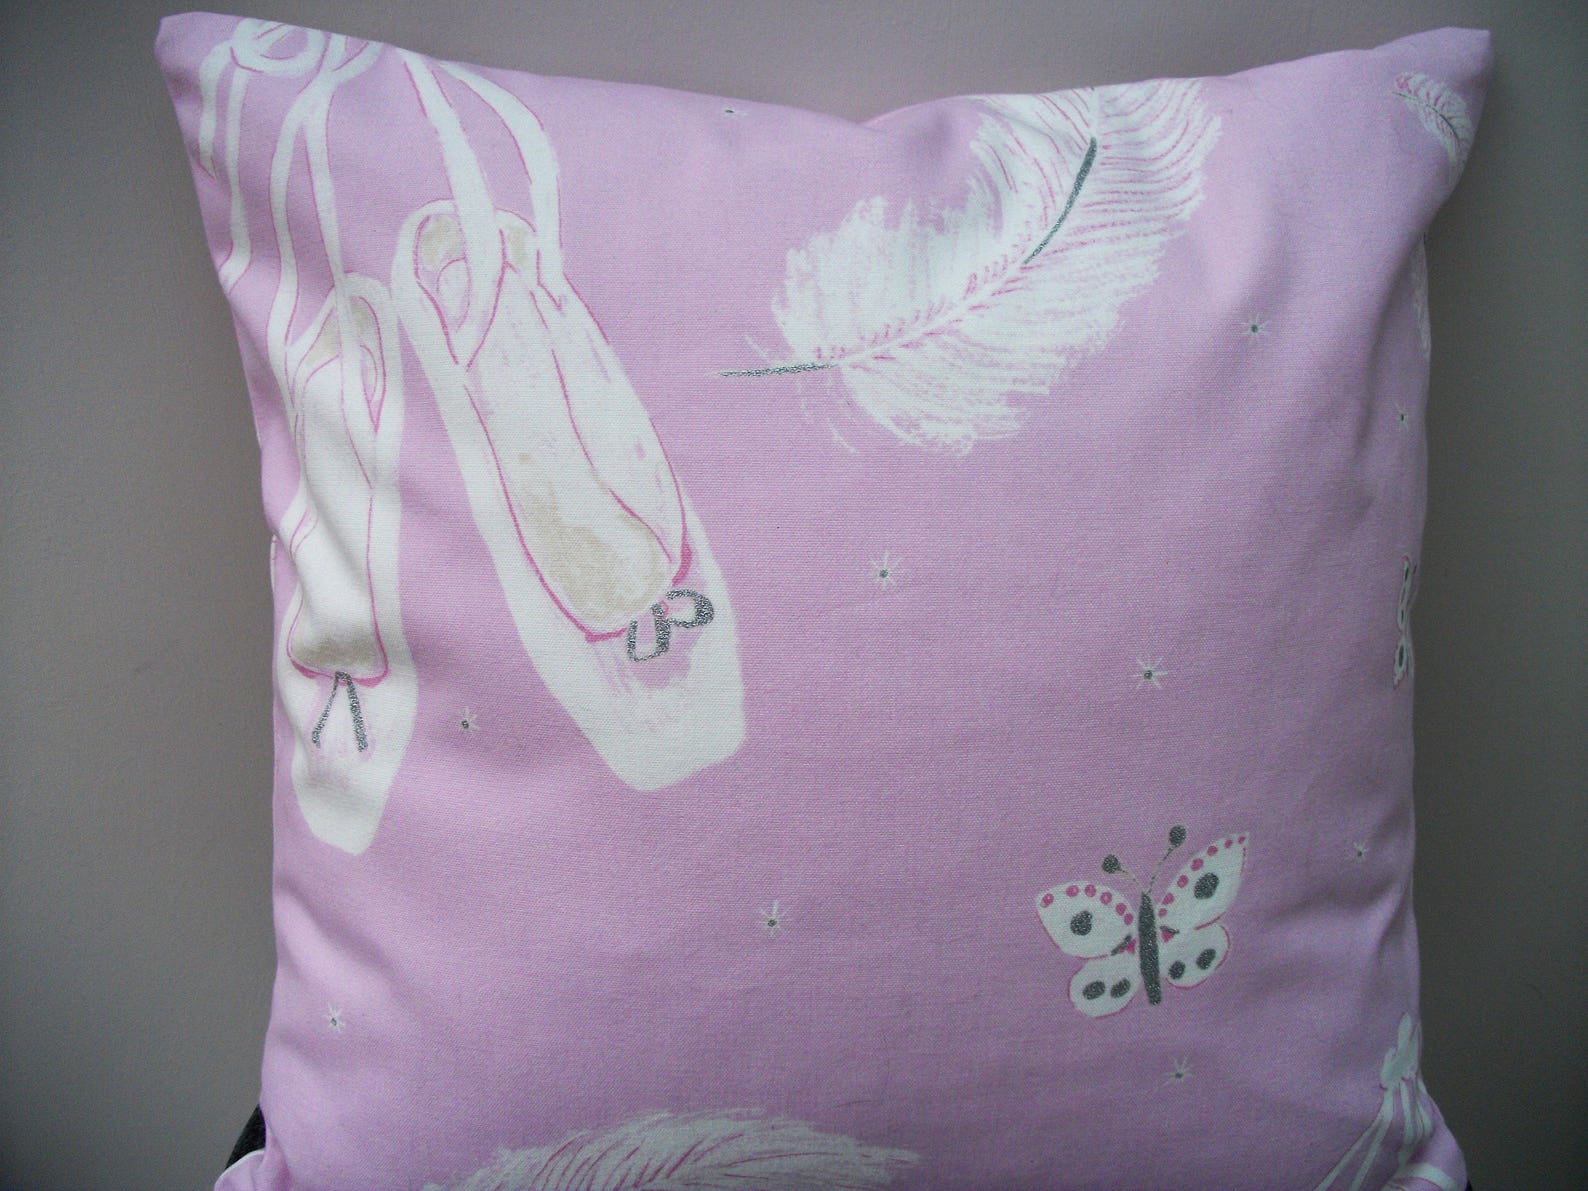 ballerina cushion cover, ballerina pillow, ballet dancer gift, ballerina gift, ballet decor, gift for her, gift for ballet lover